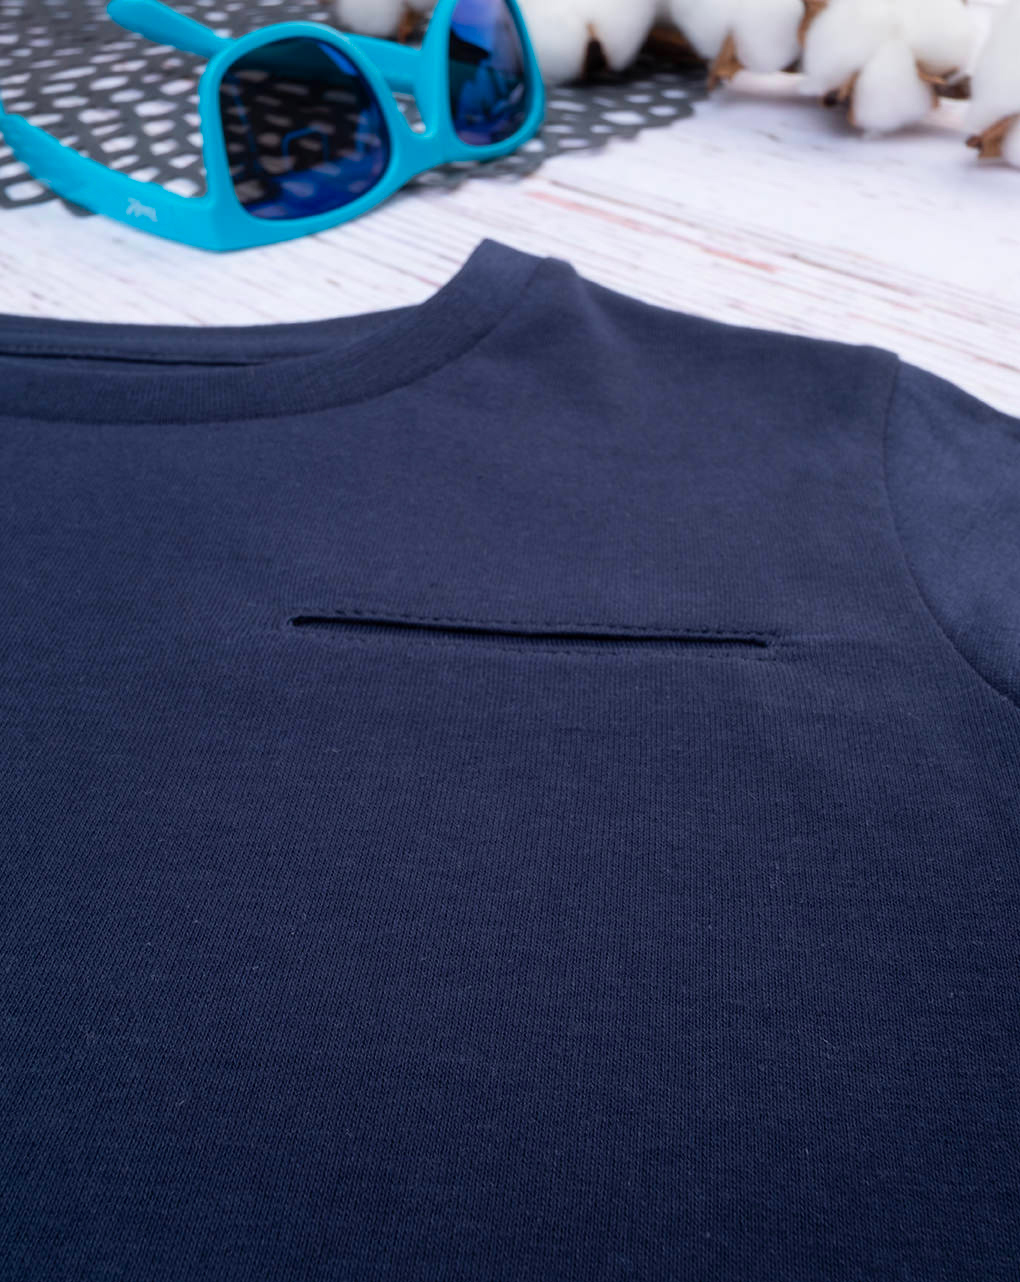 παιδική μπλούζα μπλε με τσέπη για αγόρι - Prénatal